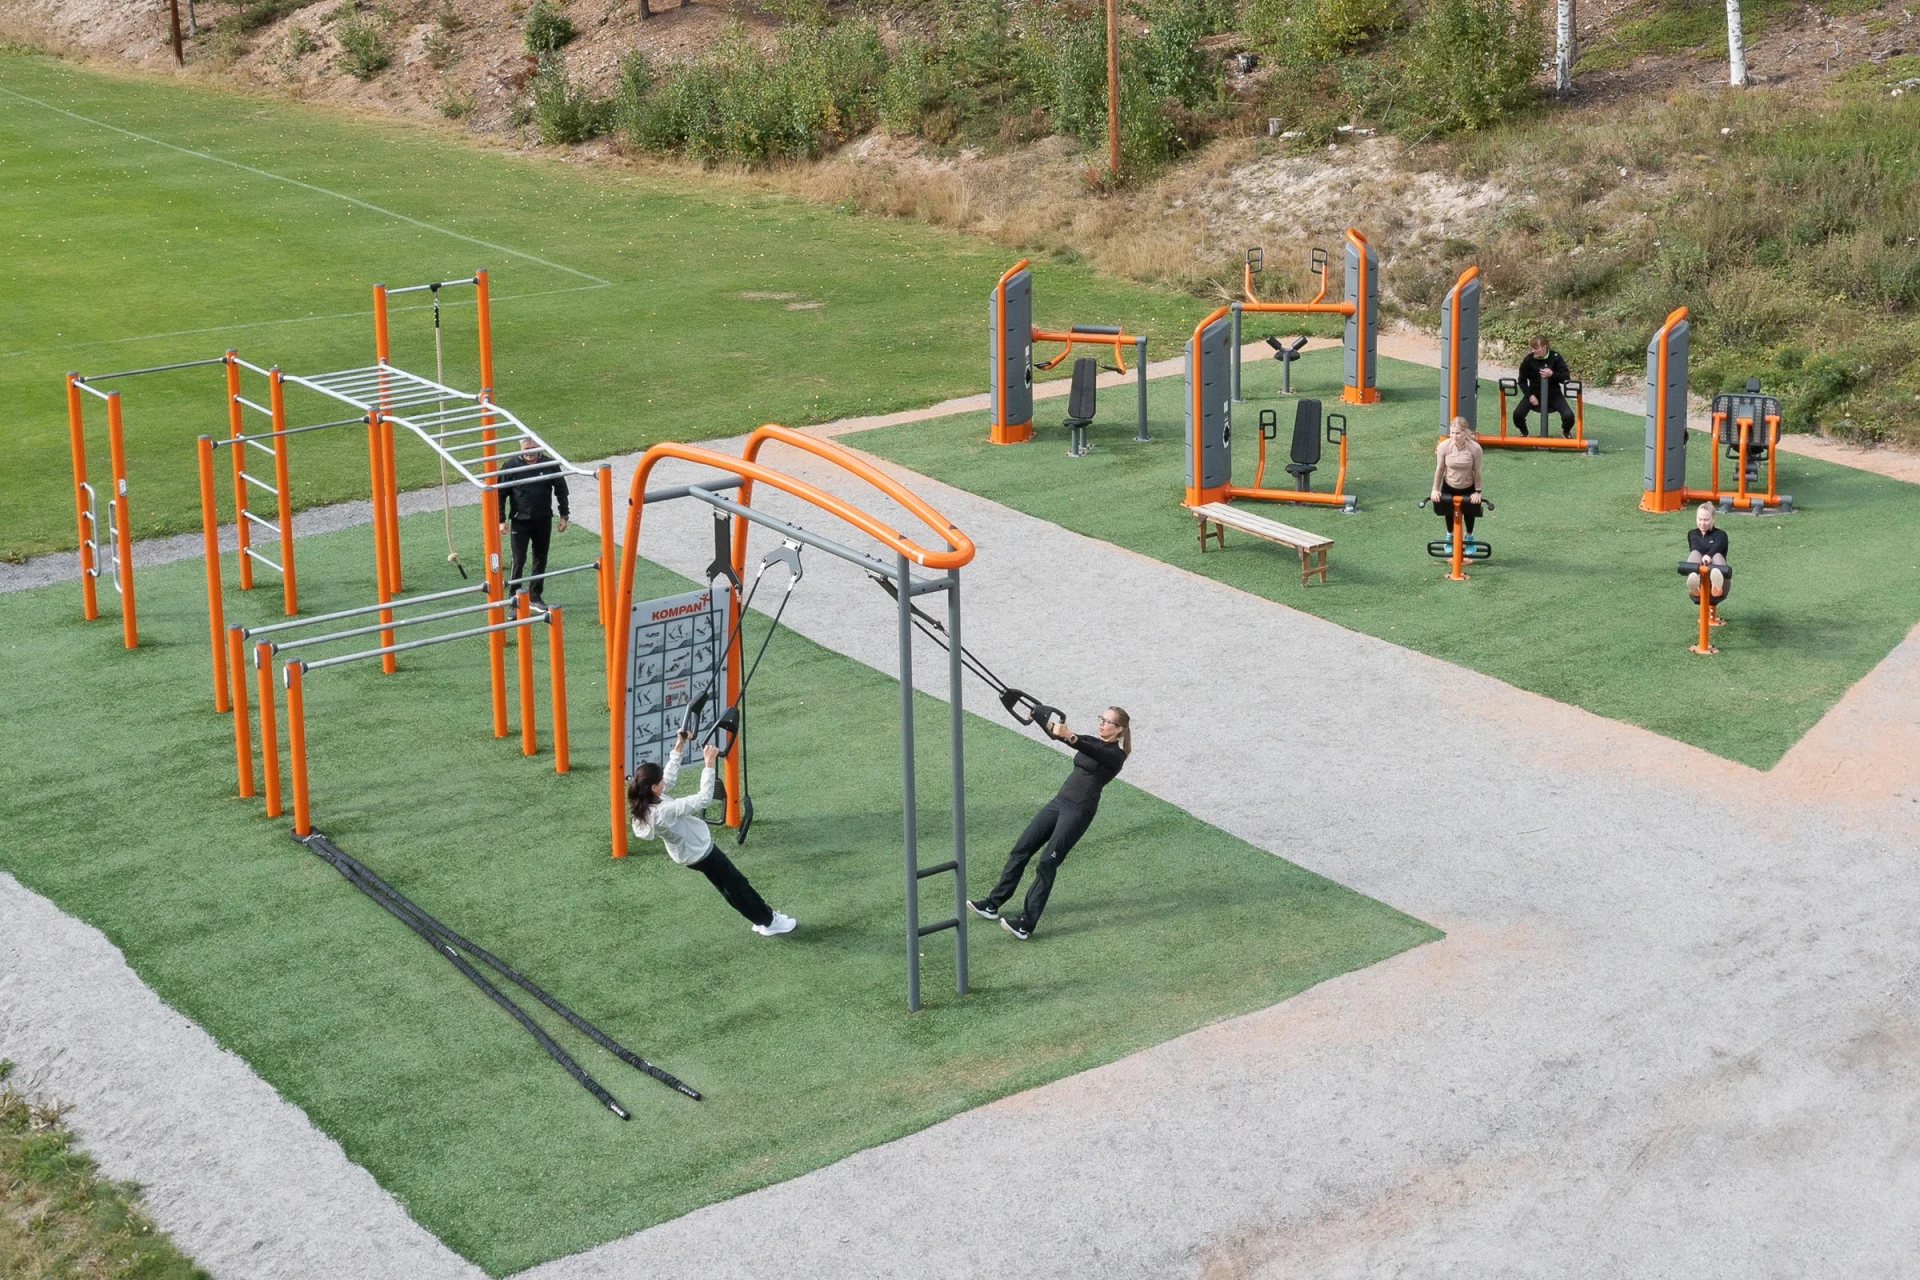 Outdoor-Fitnessplatz für verschiedene Nutzer. Kraft- und Street Workout-Geräte